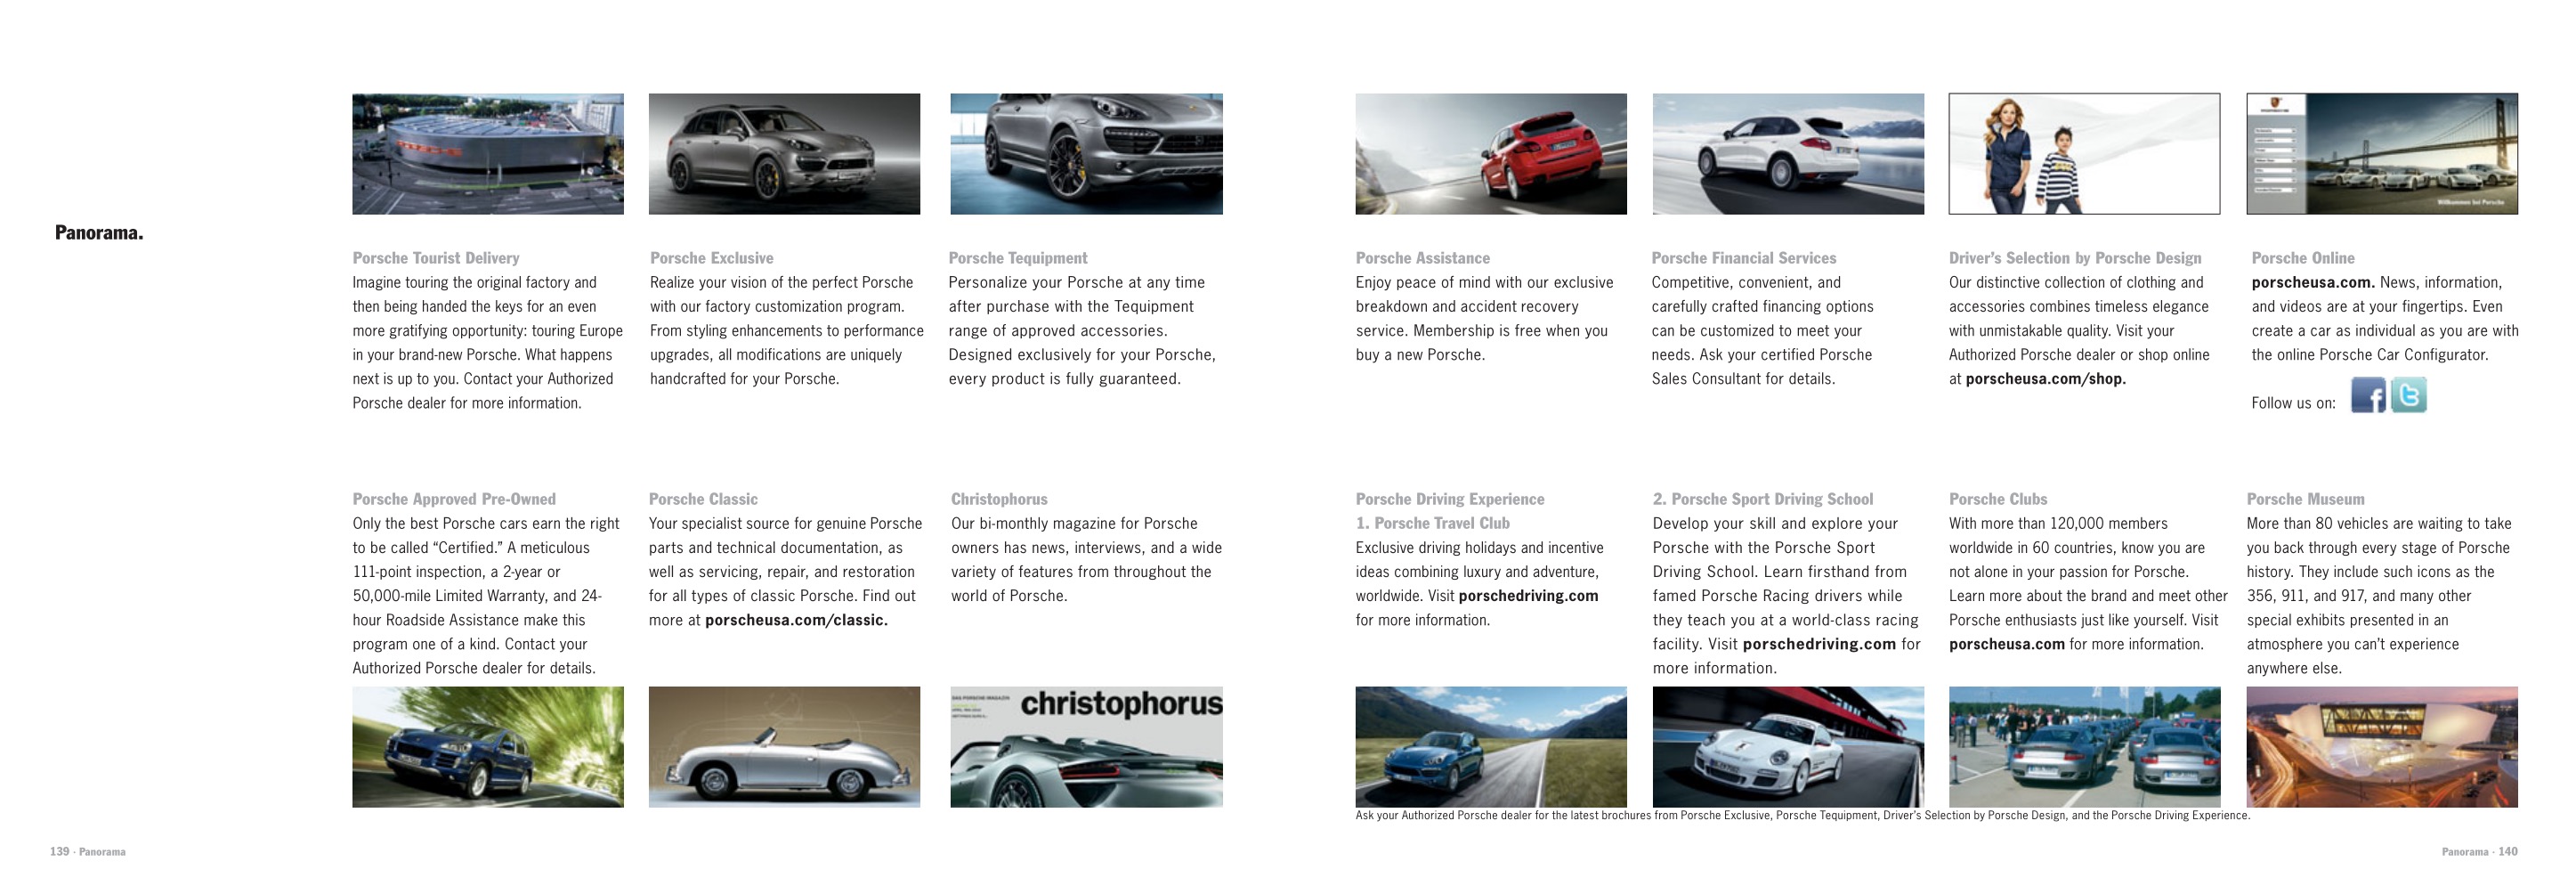 2013 Porsche Cayenne Brochure Page 56